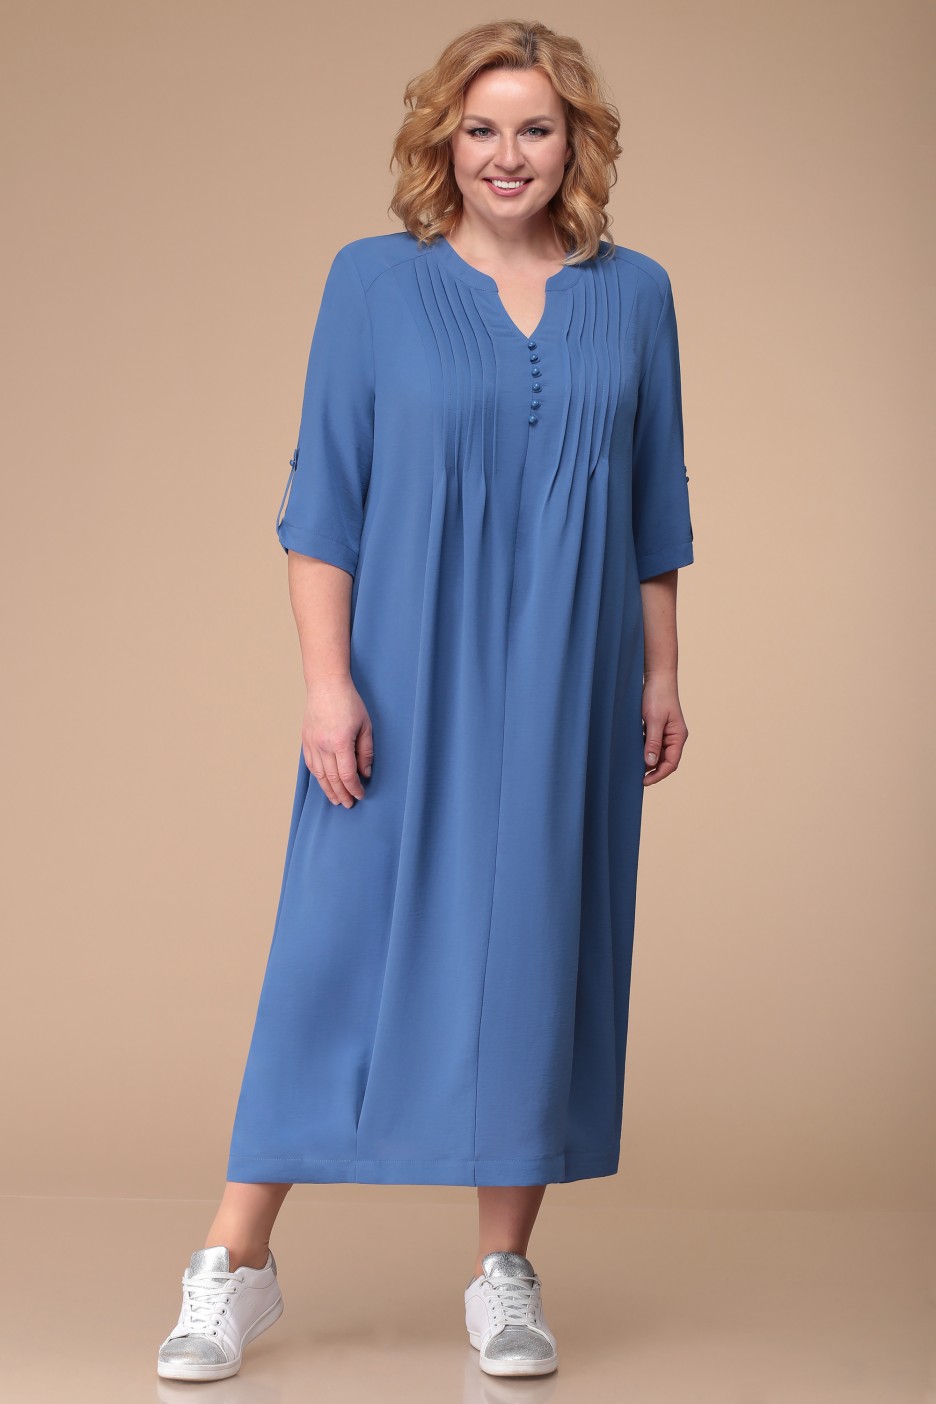 Свободное повседневное платье с декоративными складками, синее